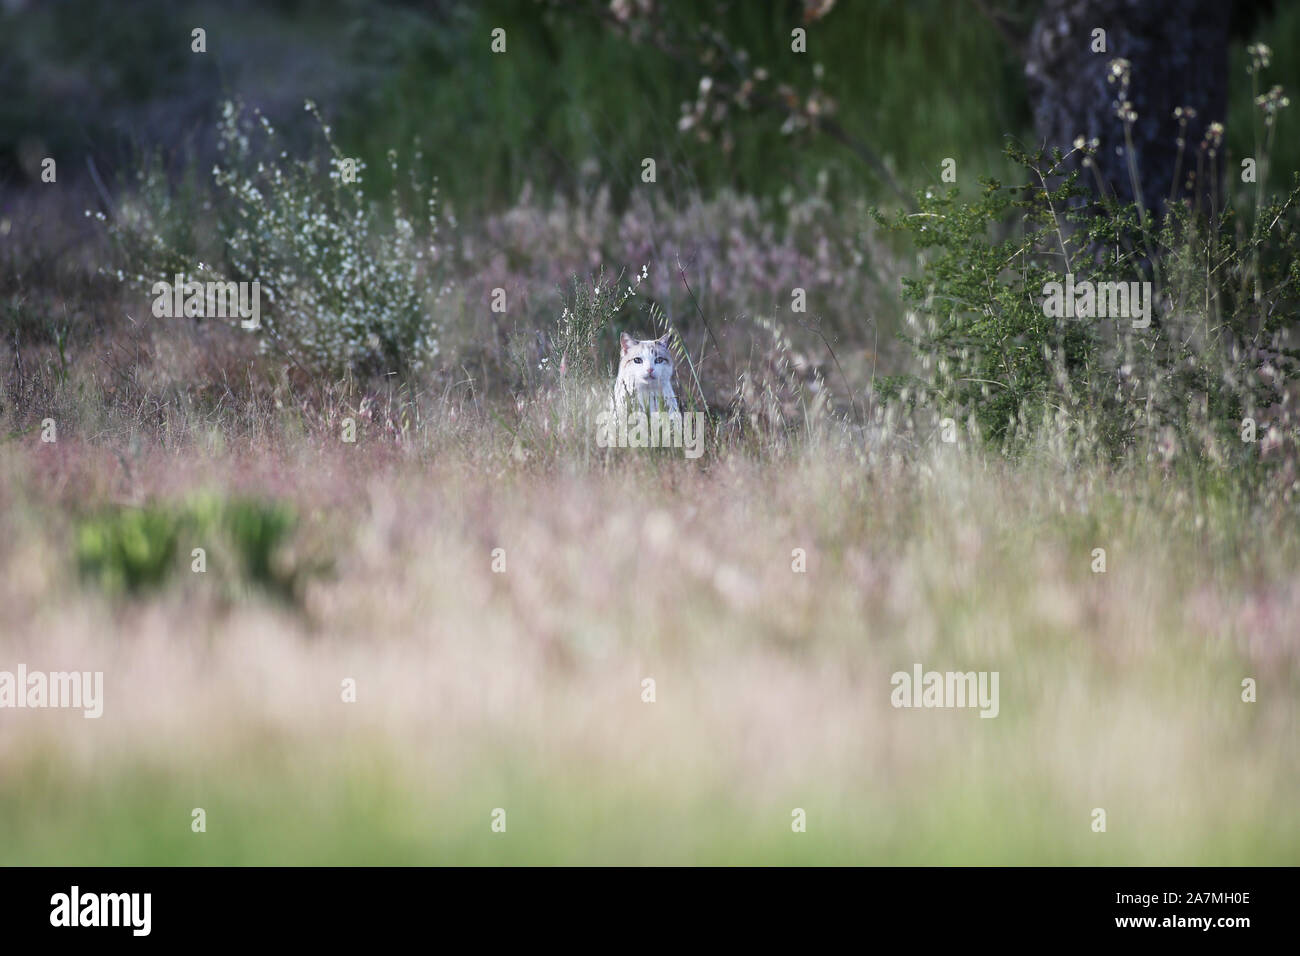 Un chat femelle blanche voit l'observateur humain de loin Banque D'Images